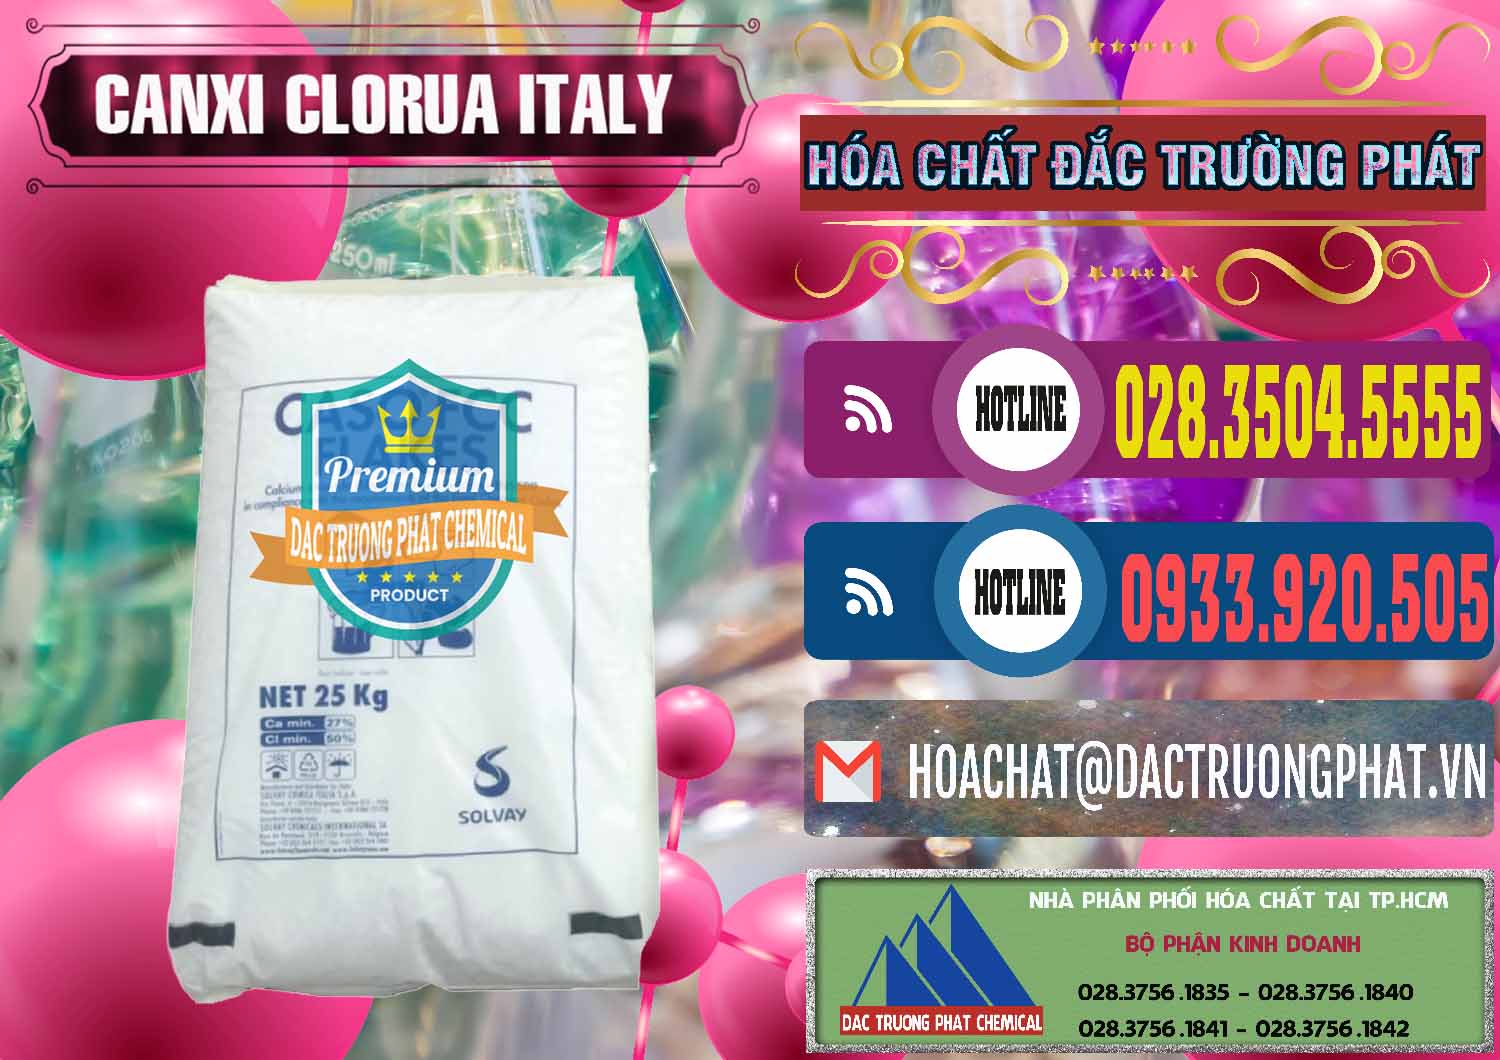 Cty chuyên kinh doanh và bán CaCl2 – Canxi Clorua Food Grade Ý Italy - 0435 - Cty cung cấp và phân phối hóa chất tại TP.HCM - muabanhoachat.com.vn